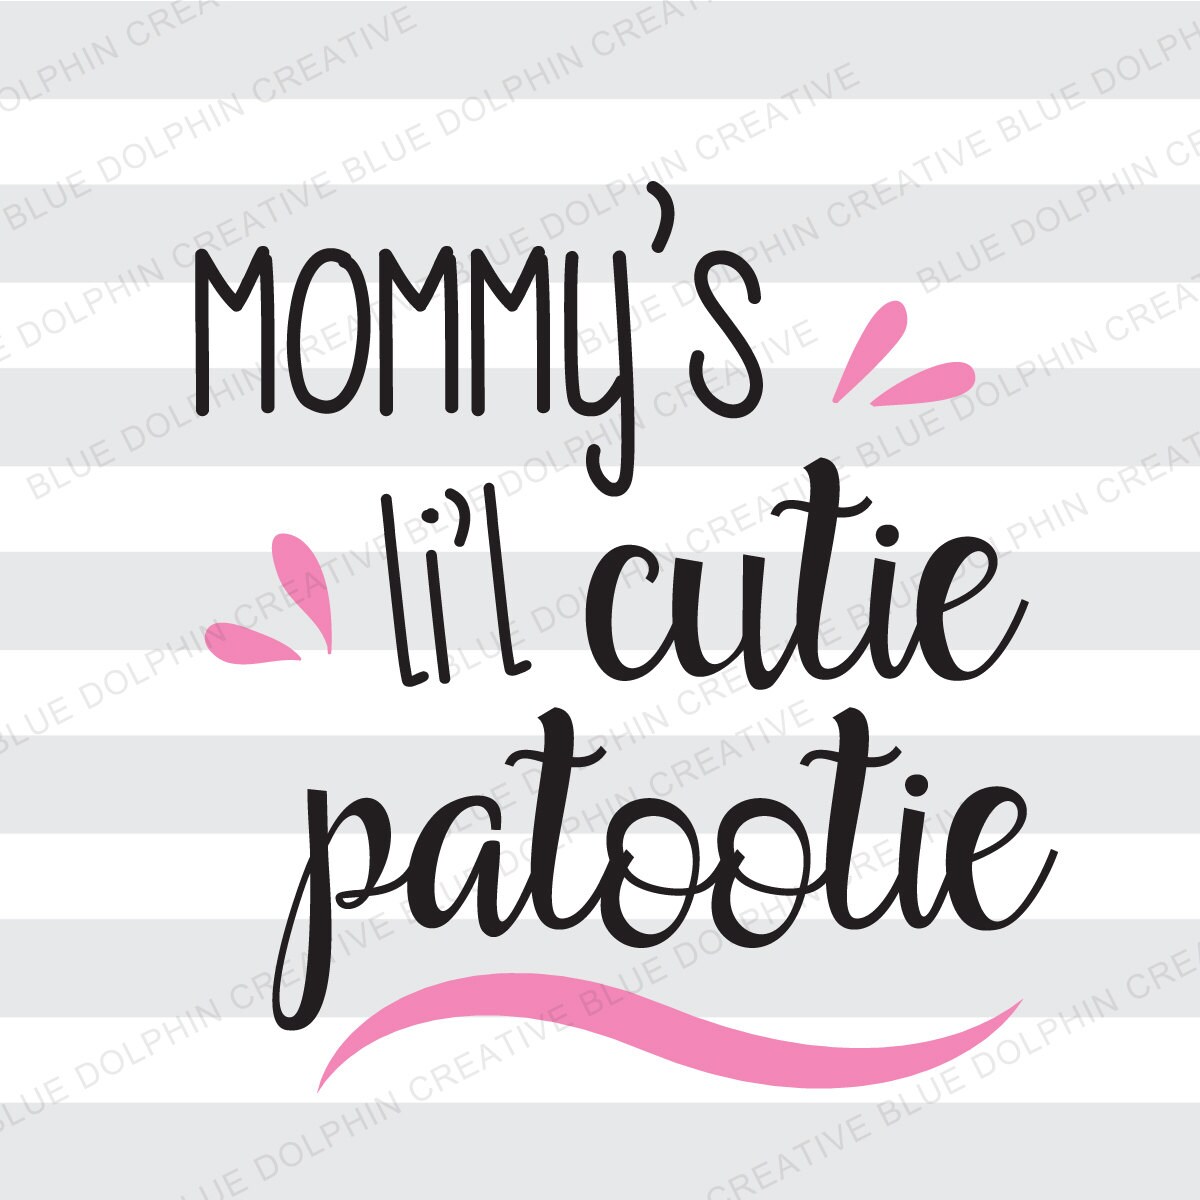 Download Mommy's Li'l Cutie Patootie SVG png pdf / Cricut